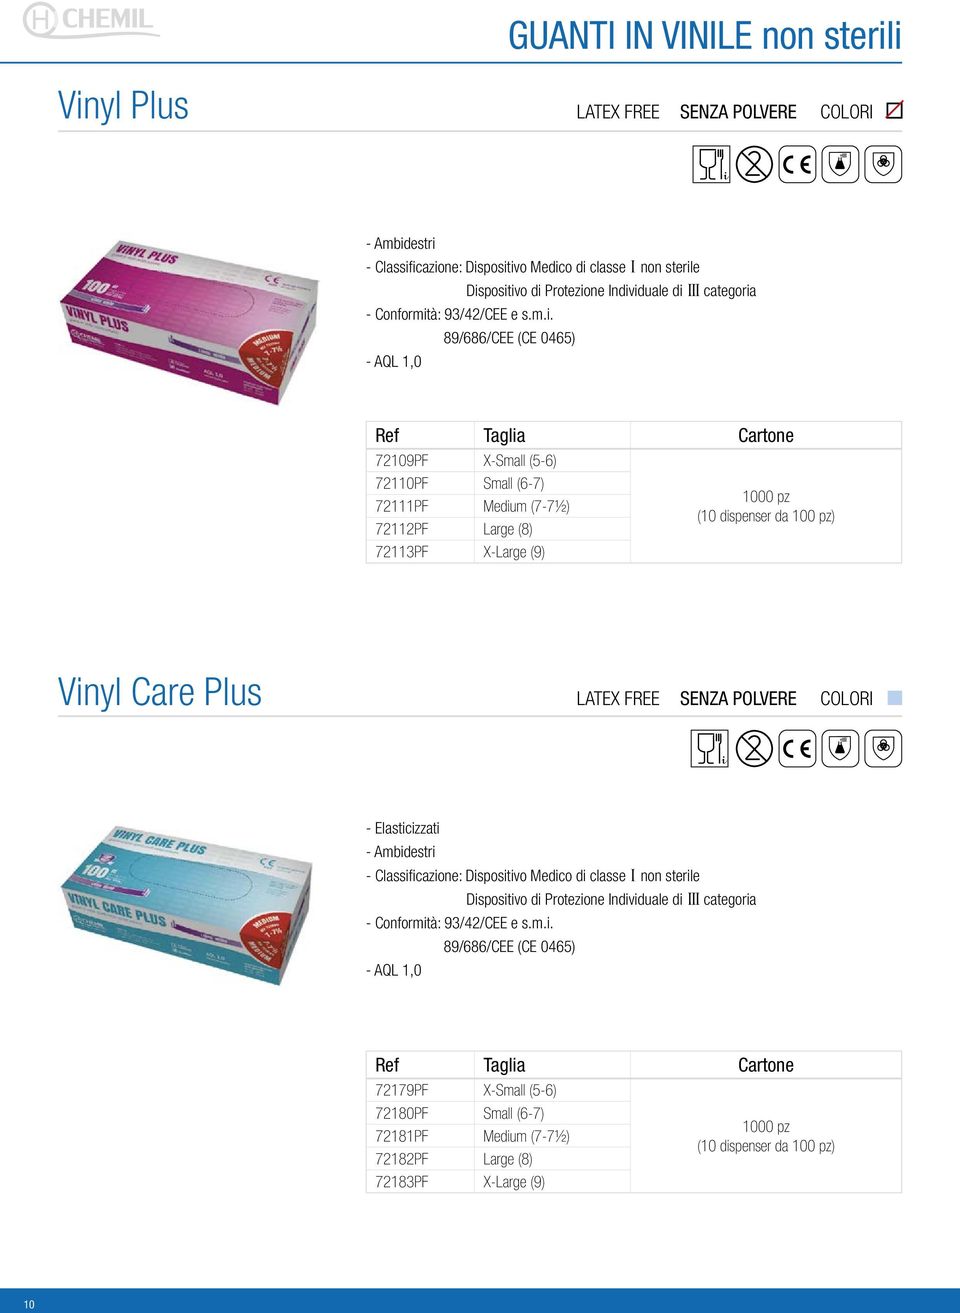 pz) Vinyl Care Plus LATEX FREE - Elasticizzati Dispositivo di Protezione Individuale di III categoria 89/686/CEE (CE 0465) - AQL